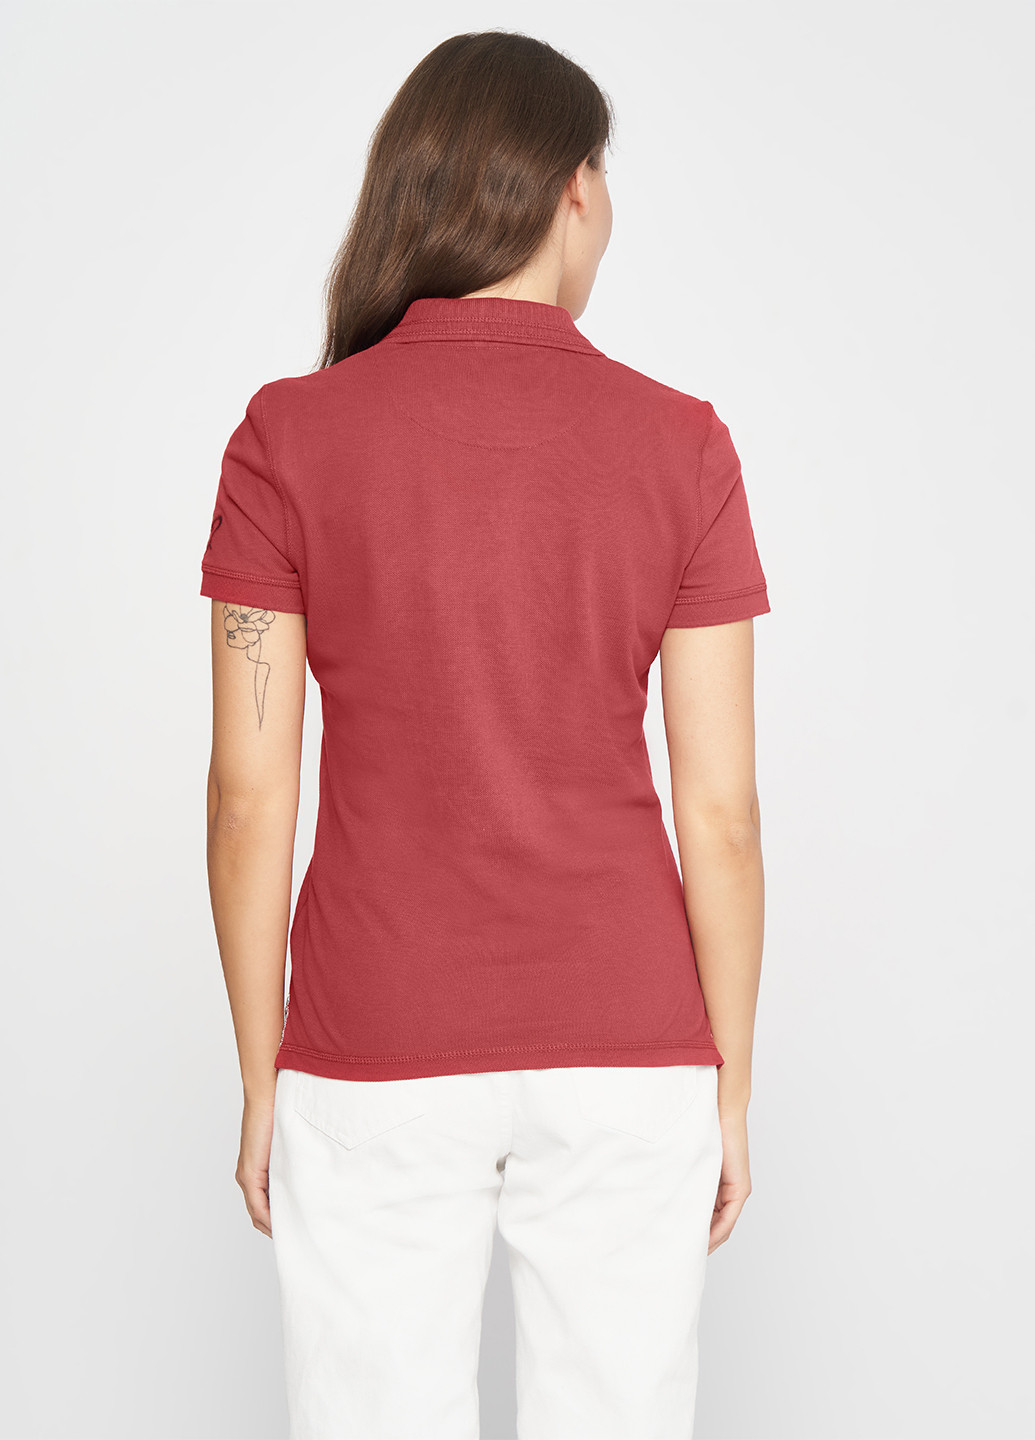 Бордовая женская футболка-поло Tom Tailor однотонная